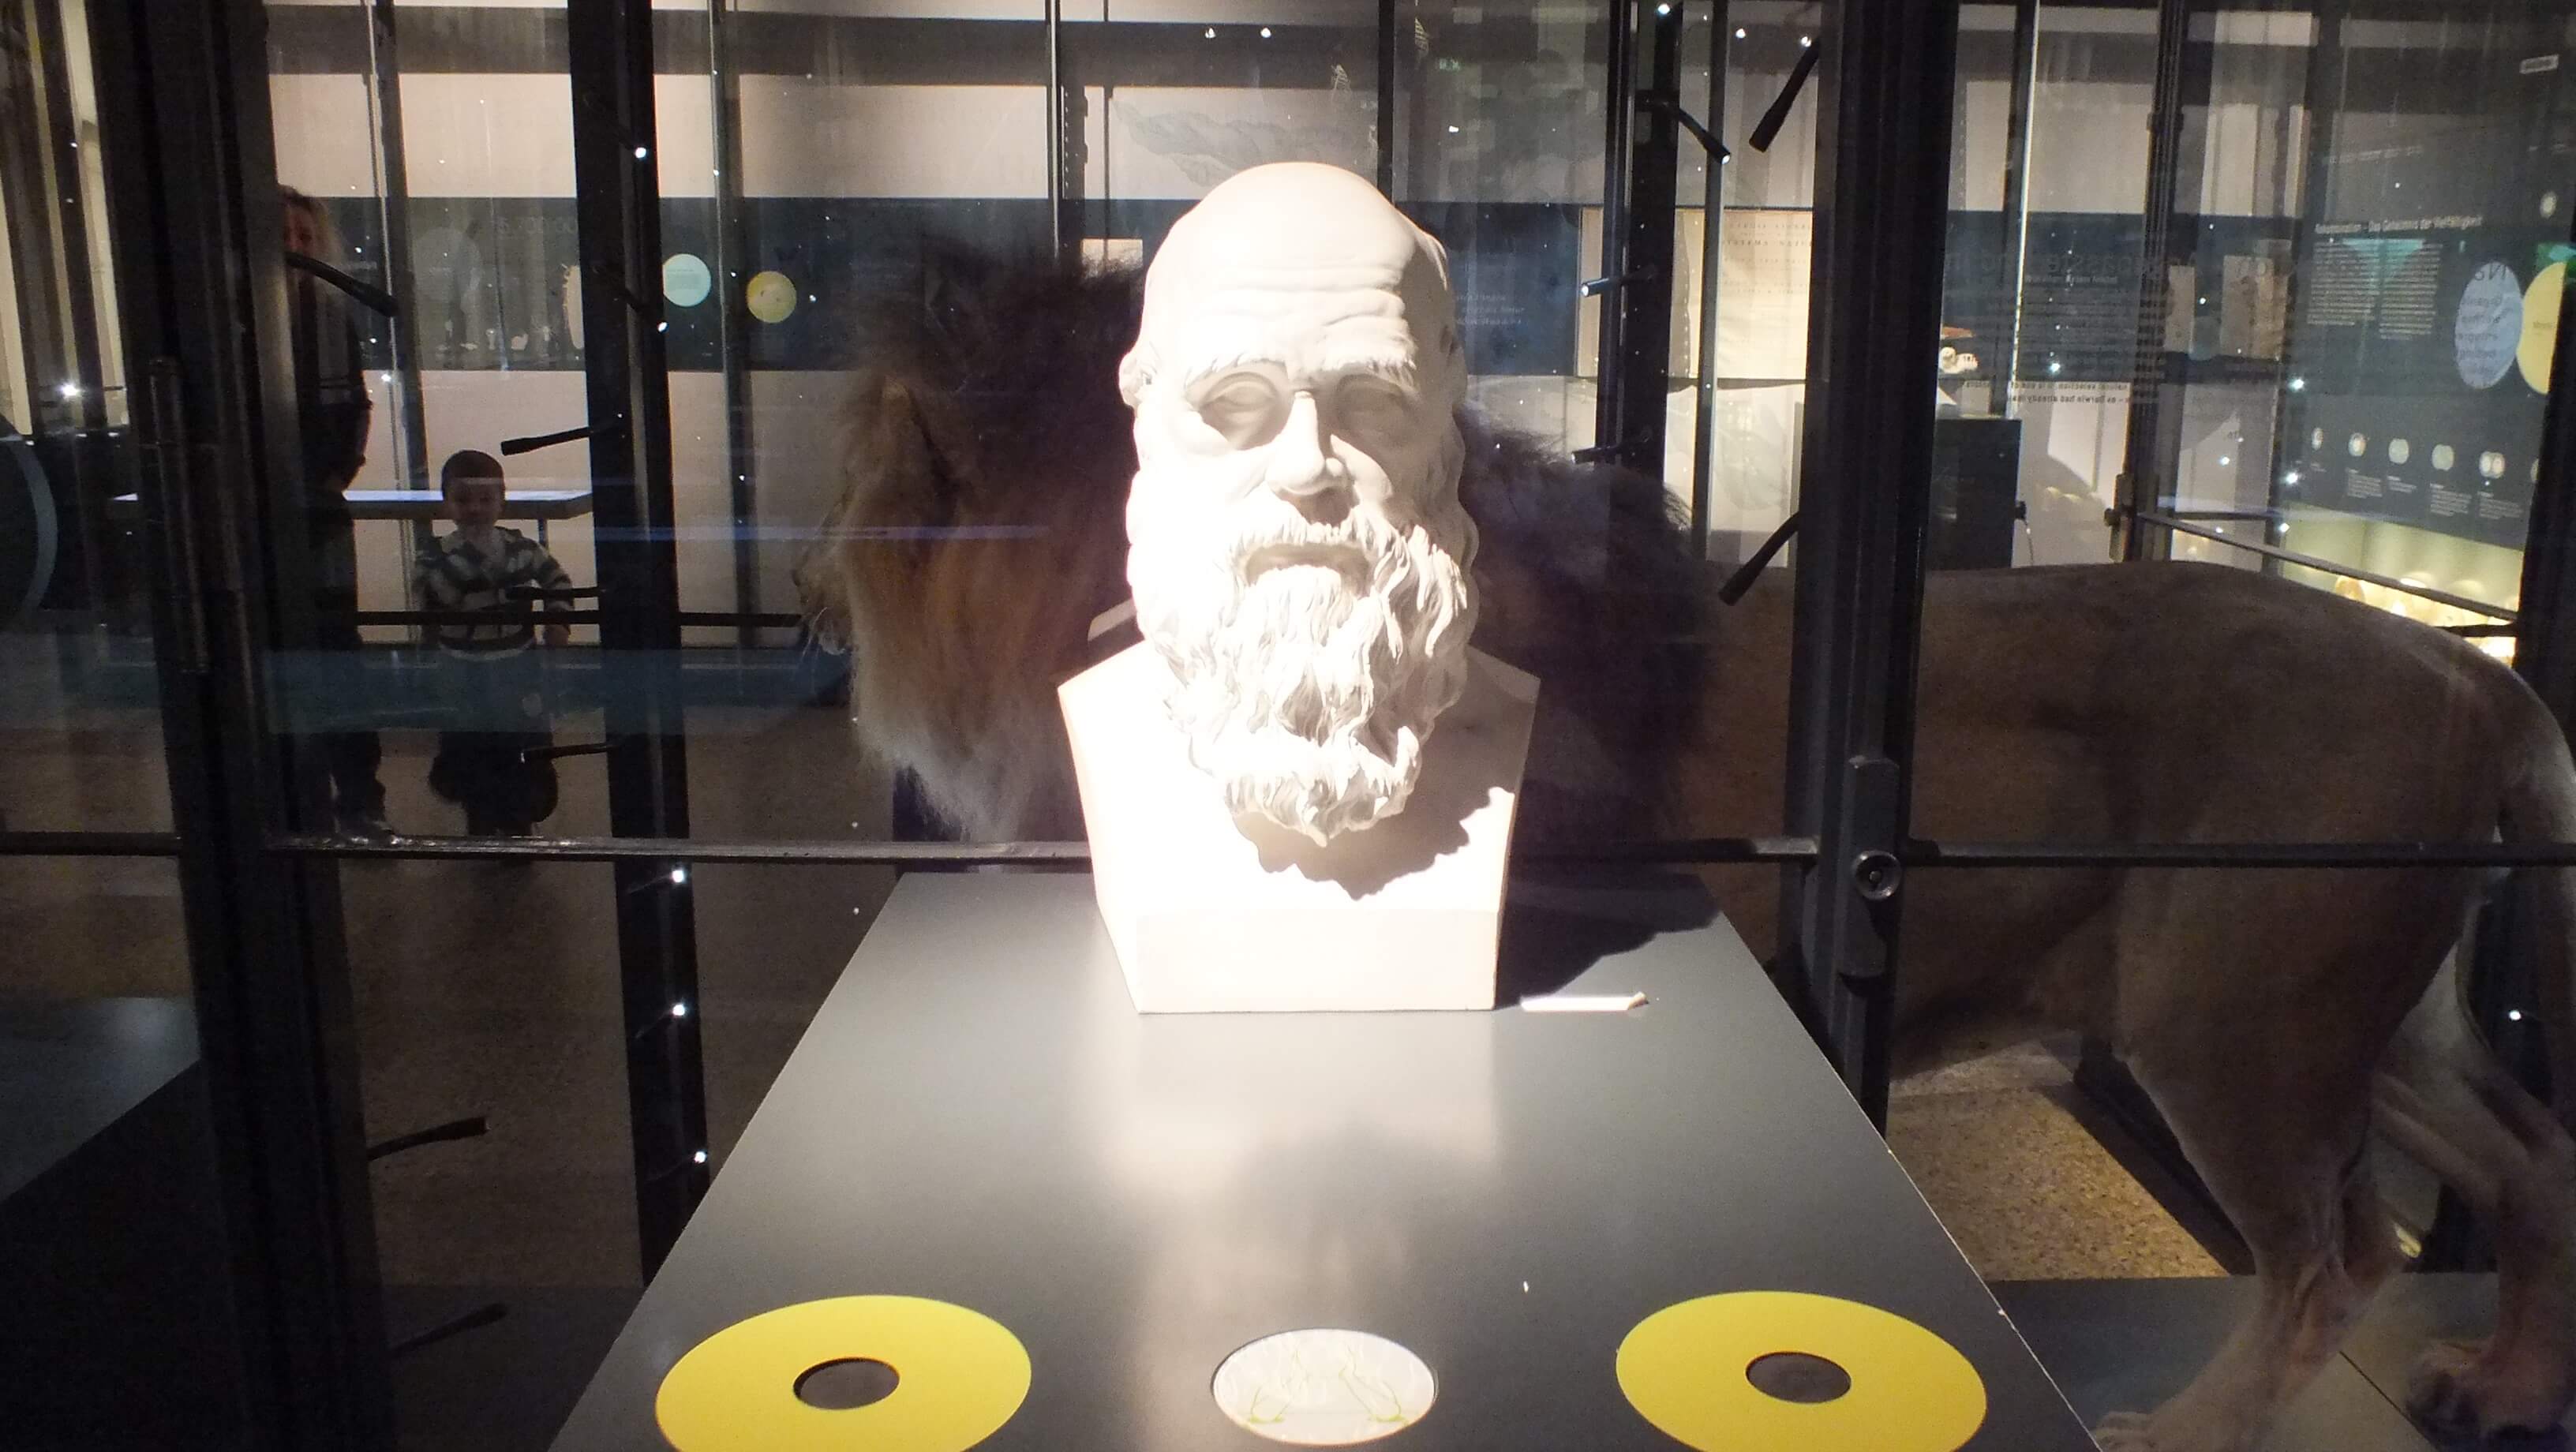 פסלו של צ'ארלס דרווין בתצוגת "אבולוציה בפעולה" במוזיאון הטבע בברלין. צילום: אבי בליזובסקי, מארס 2013